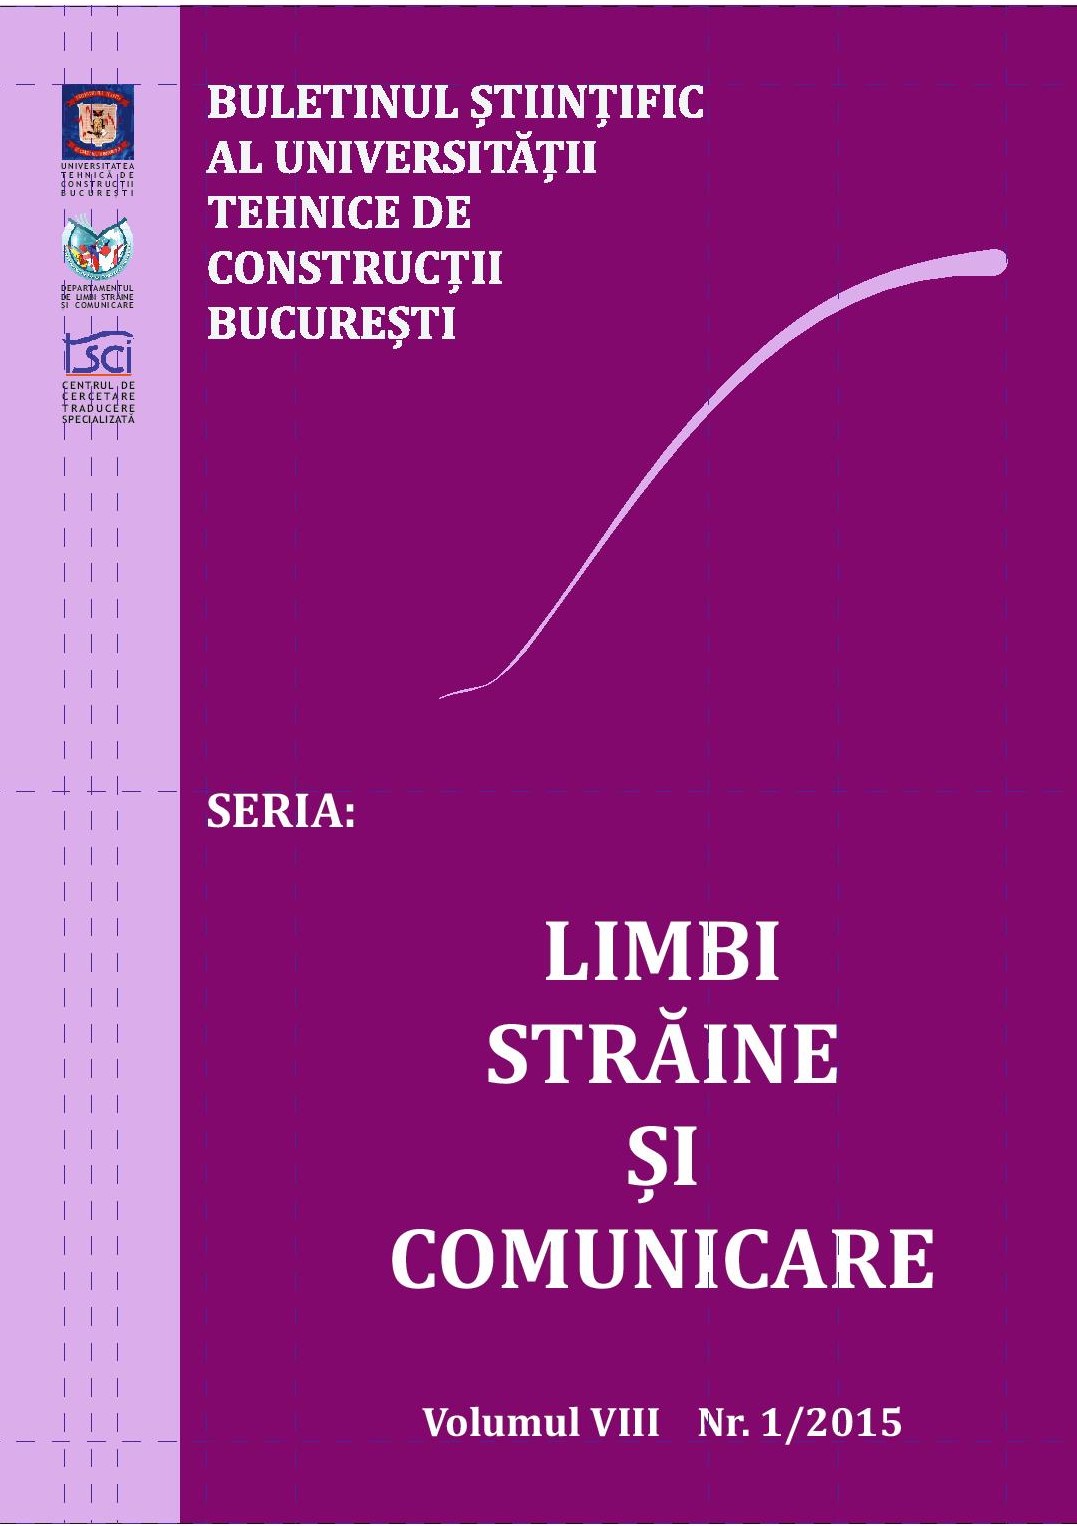 Ghenţulescu, R. (2015). A Guide to Terminology. Bucureşti: Conspress Cover Image